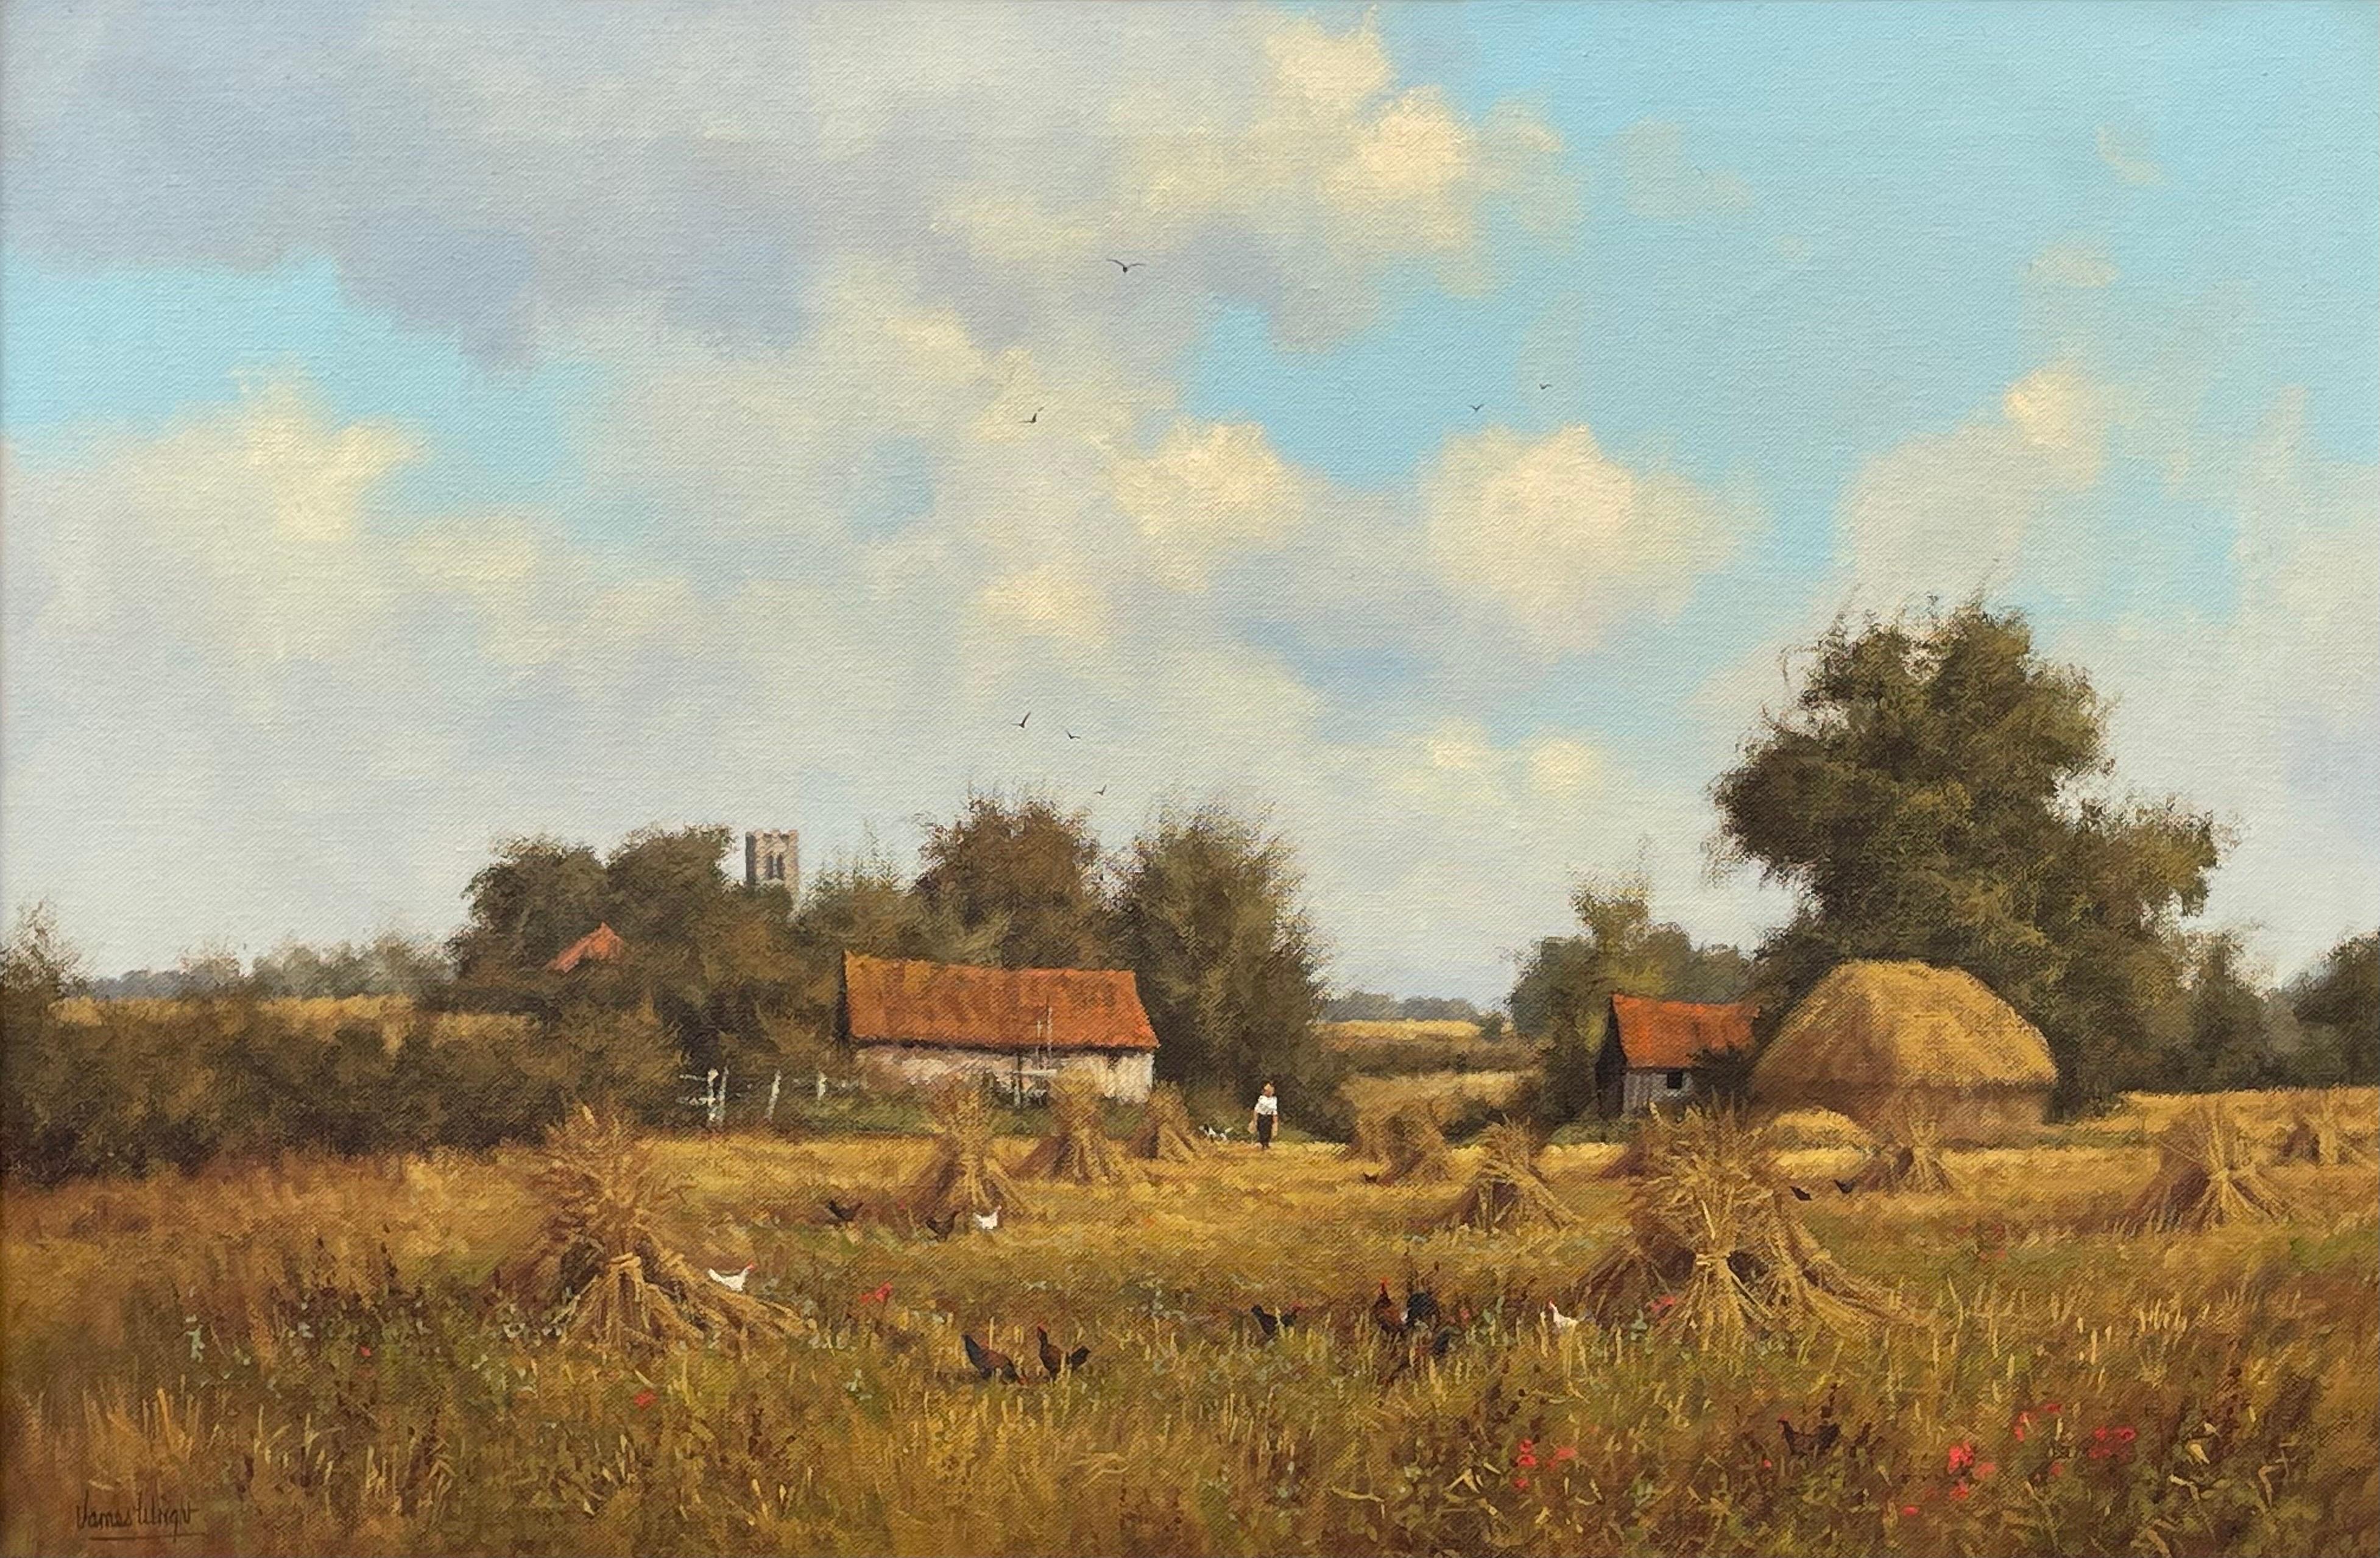 Bauernhofsszene mit Haystacks in der englischen Landschaft von realistischem Landschaftsmaler – Painting von James Wright